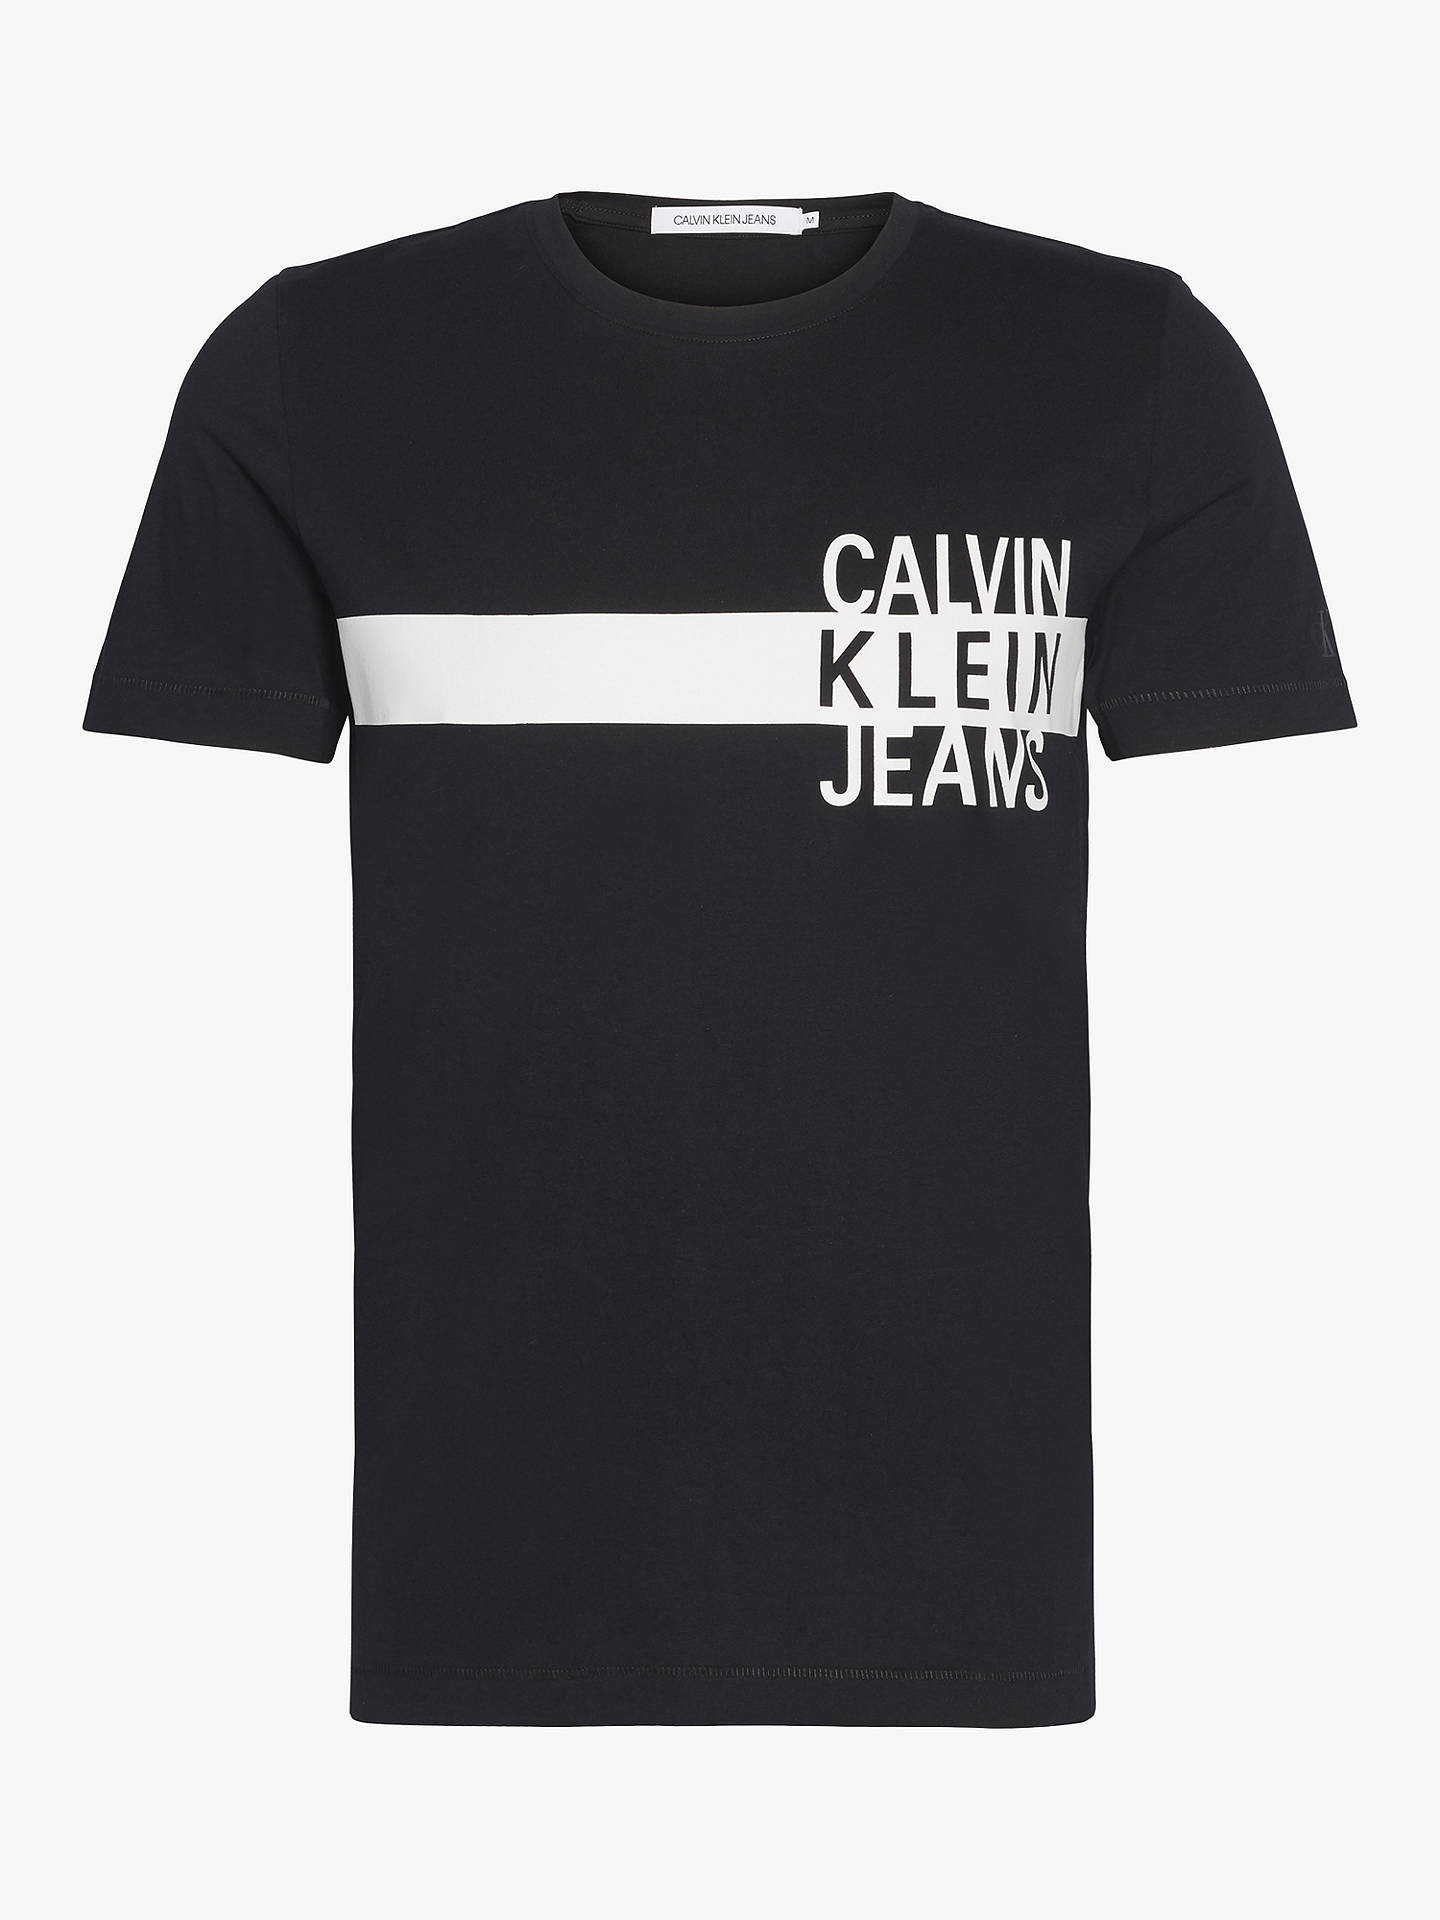 Calvin Klein Jeans Stacked Logo Stripe T-Shirt at John Lewis & Partners